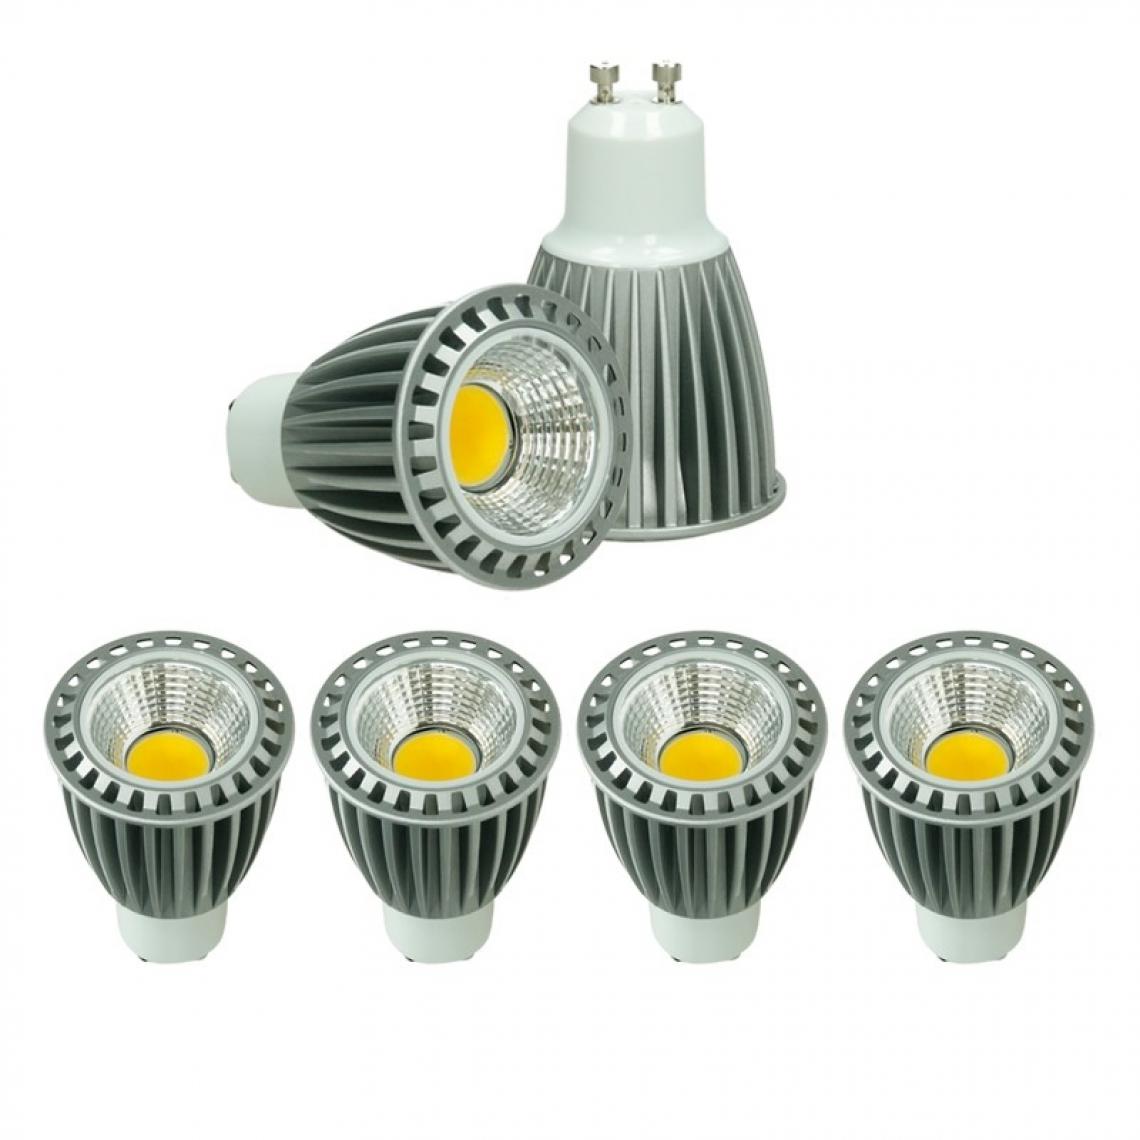 Ecd Germany - ECD Germany 4 x GU10 COB spot 9W Haute puissance Lampe à économie d'énergie d'environ 552 lumens remplace Lampe halogène 60W 60° Blanc Neutre 4000K - Ampoules LED